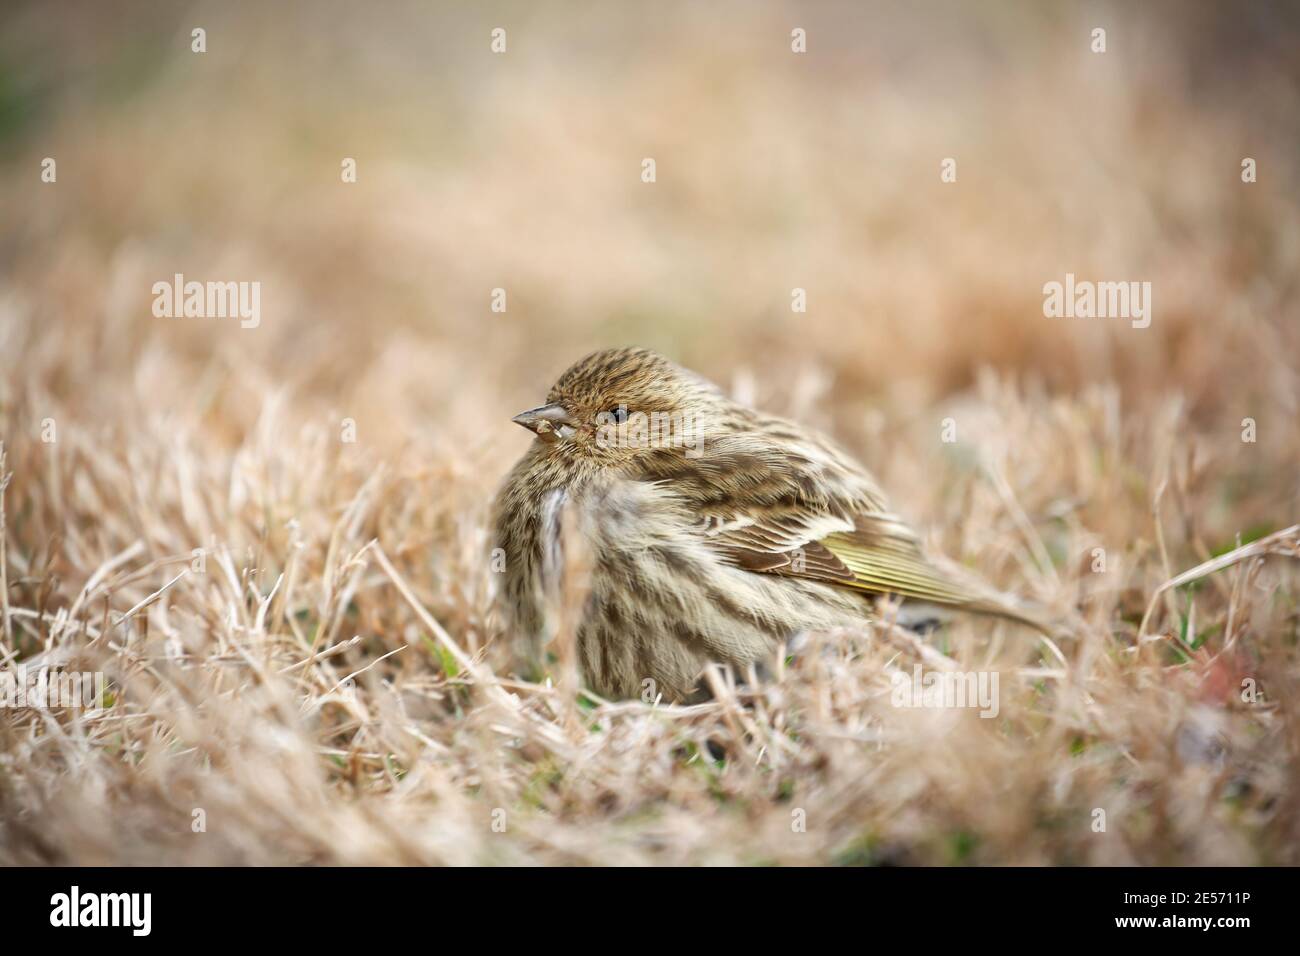 Un po' malizioso Goldfinch americano, Spinus tristis, riposa pacificamente nell'erba secca in una giornata di sole. Profondità di campo estremamente bassa Foto Stock